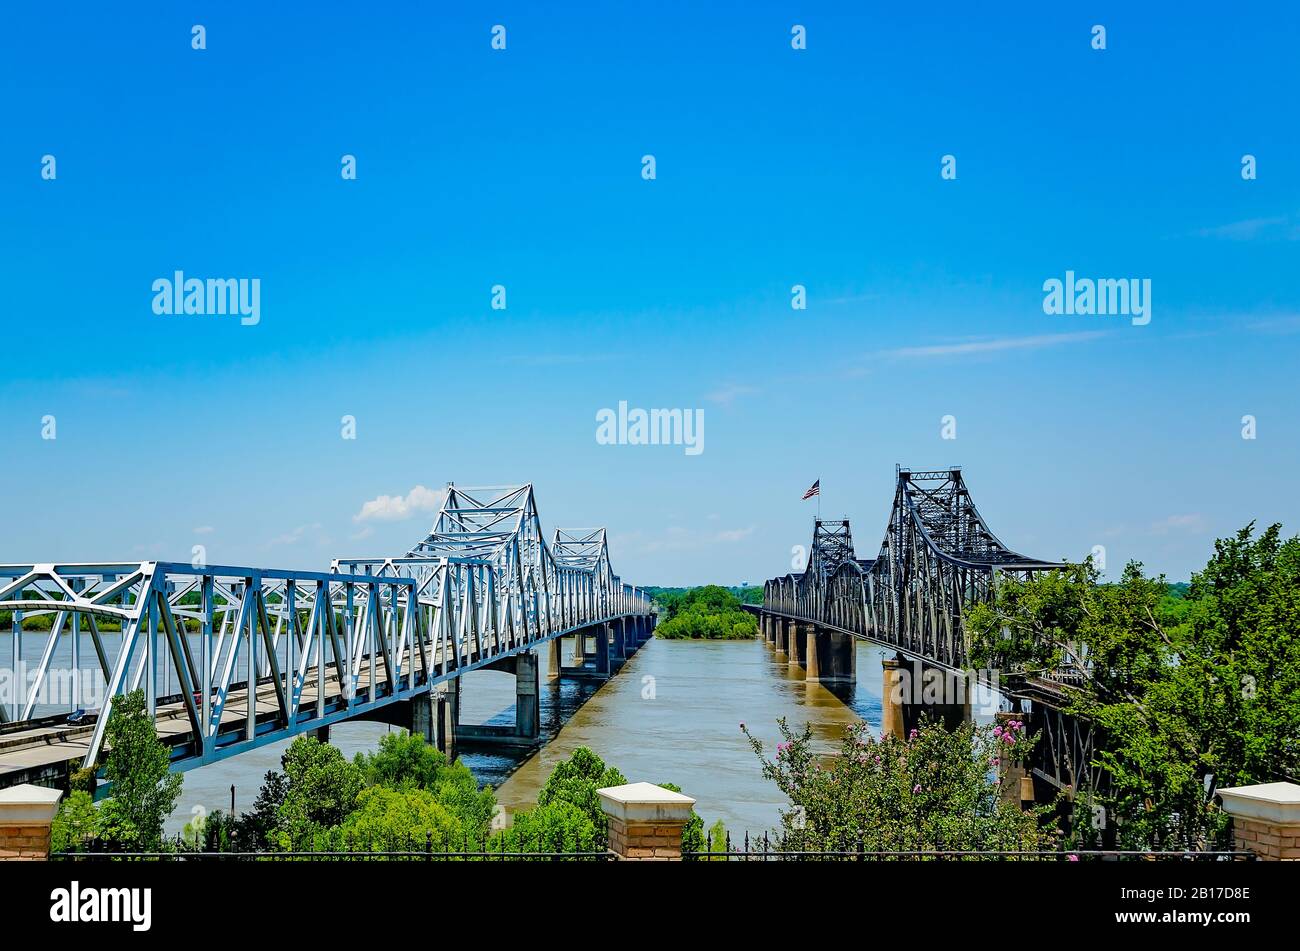 Die alte und neue Vicksburg Bridge, auch Mississippi River Bridge genannt, überspannt den Mississippi River im Welcome Center in Vicksburg, Mississippi. Stockfoto